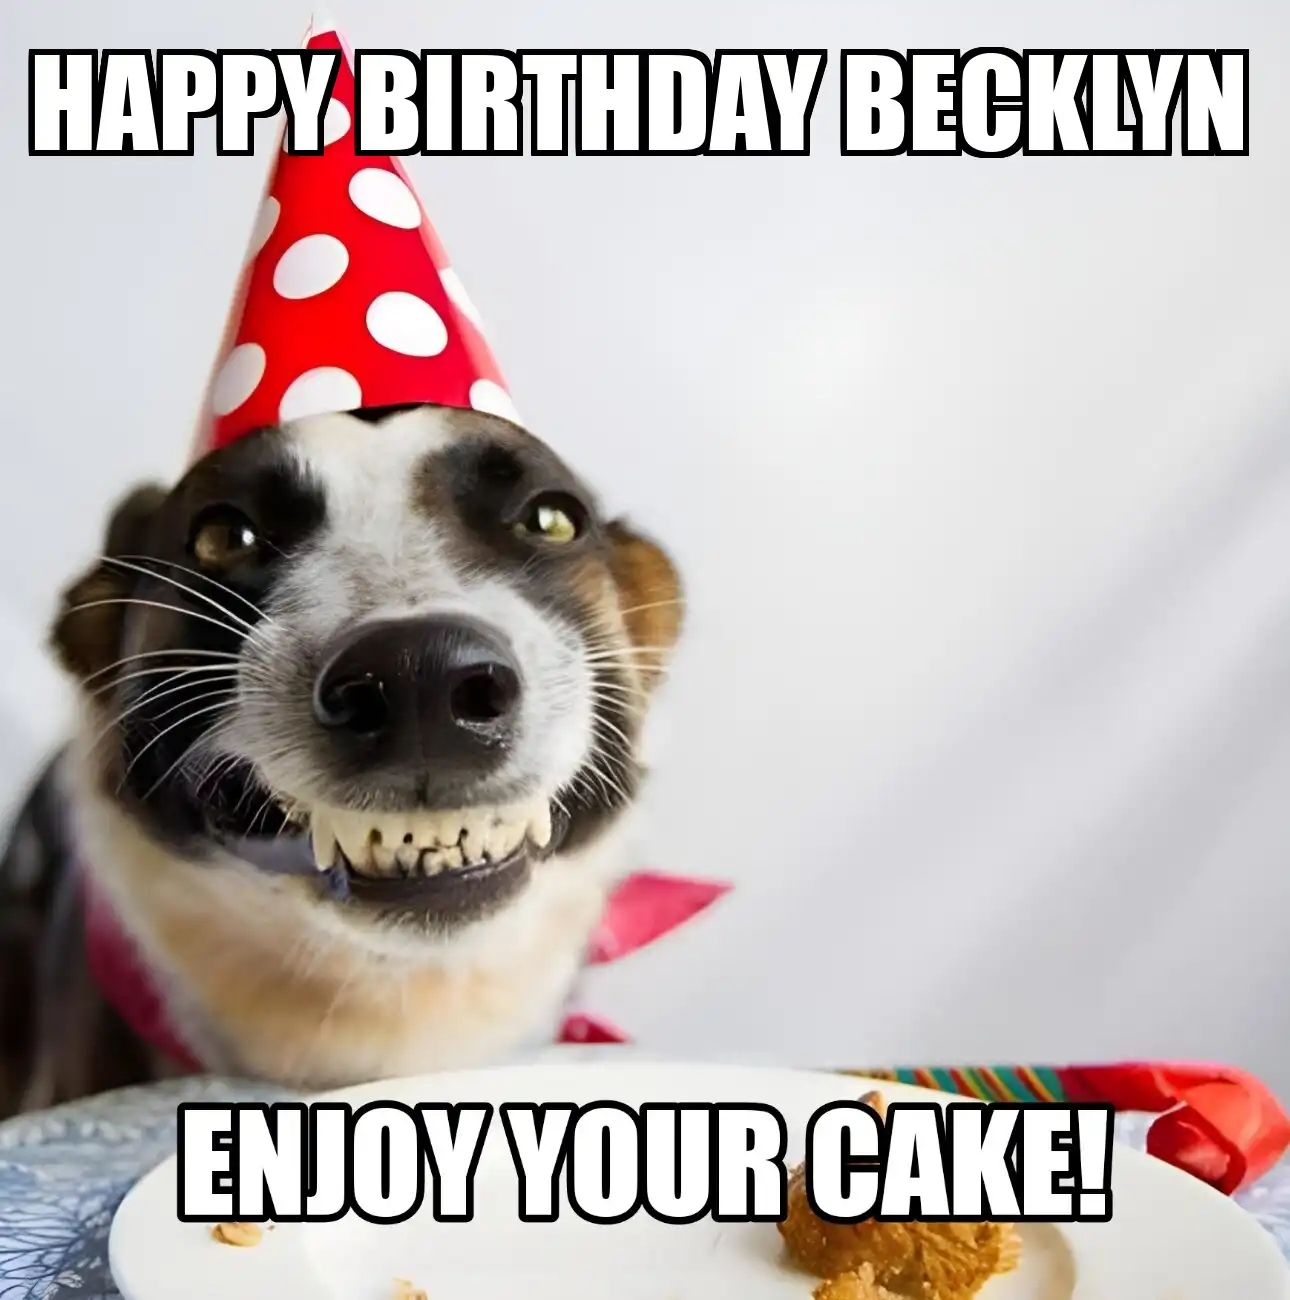 Happy Birthday Becklyn Enjoy Your Cake Dog Meme